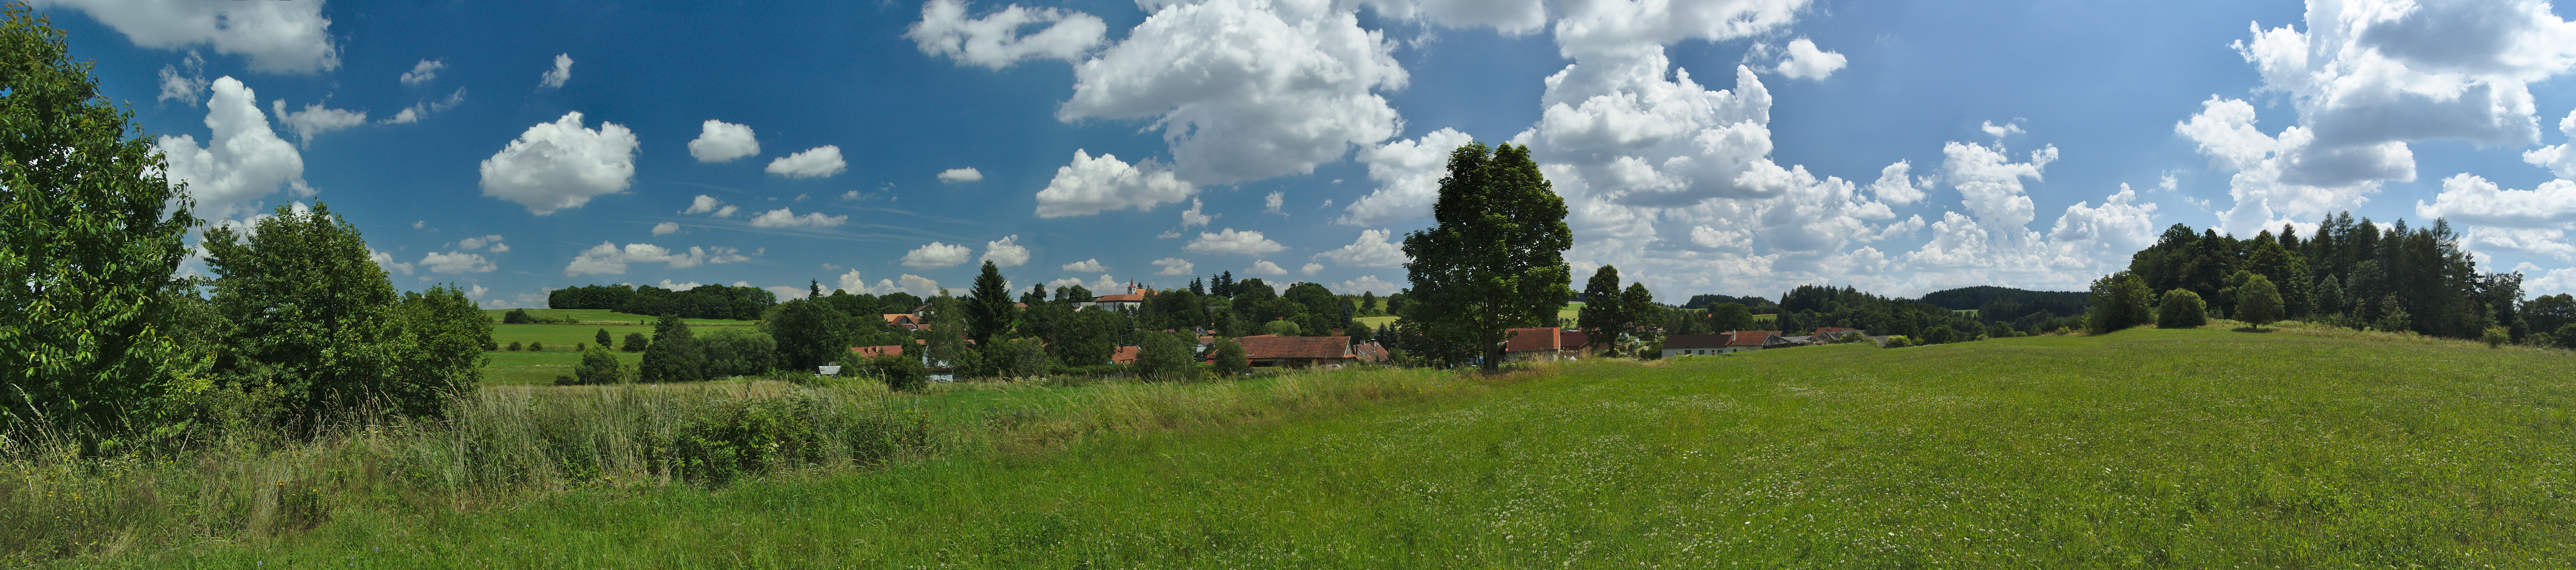 Skřípov - panorama, okres Prostějov.jpg